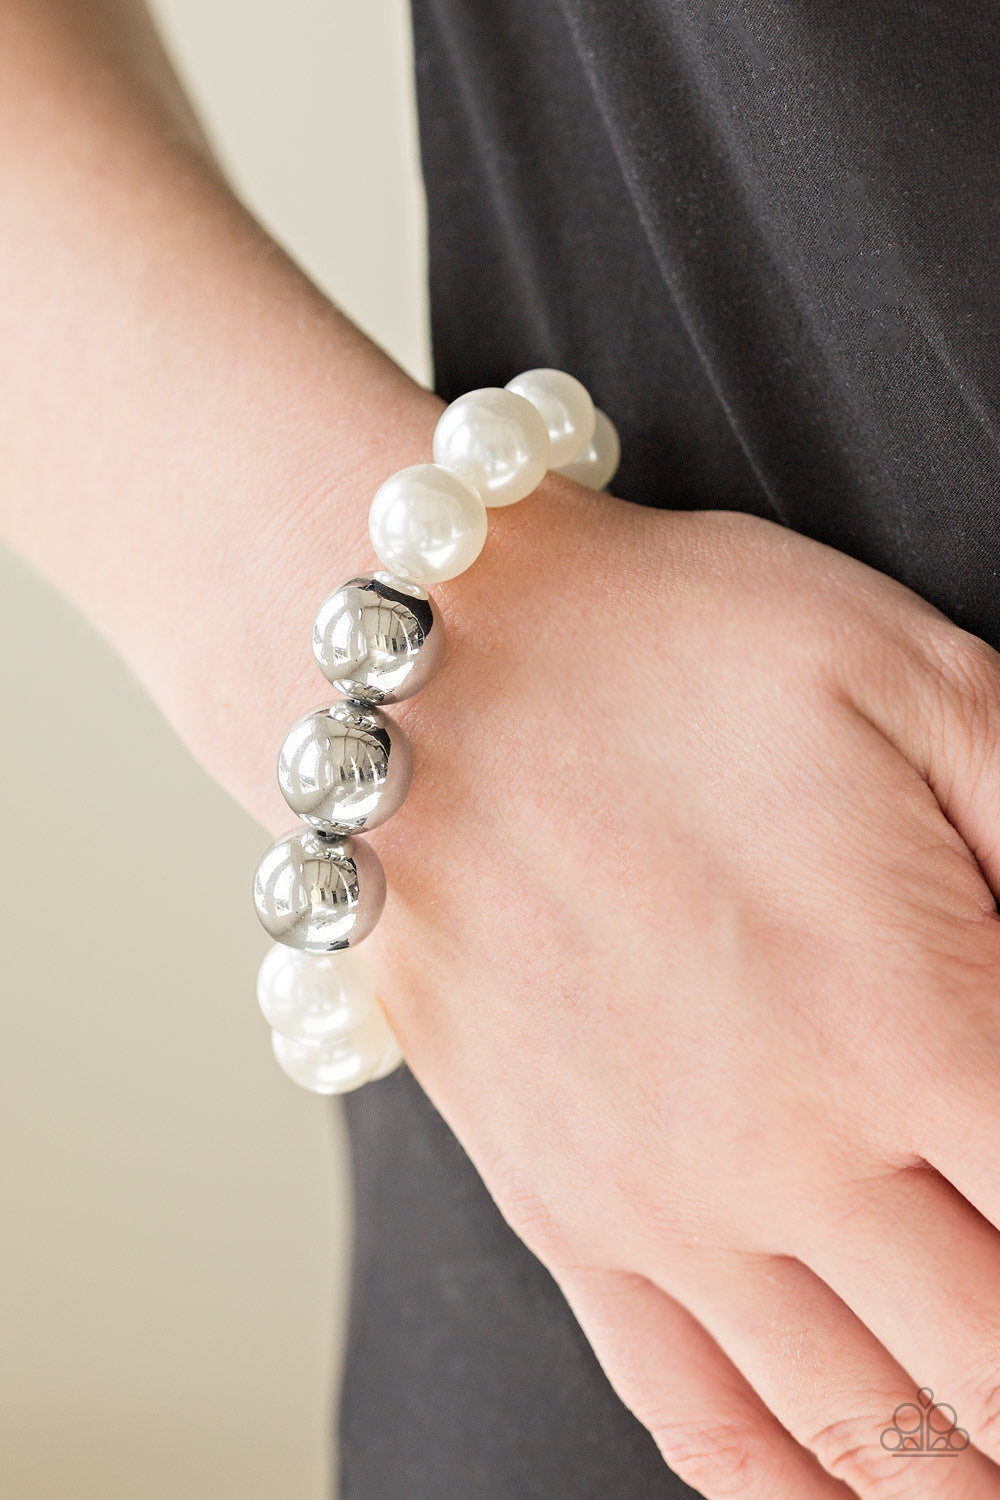 Paparazzi All Dress UPTOWN - White Pearls - Bracelet - $5 Jewelry With Ashley Swint